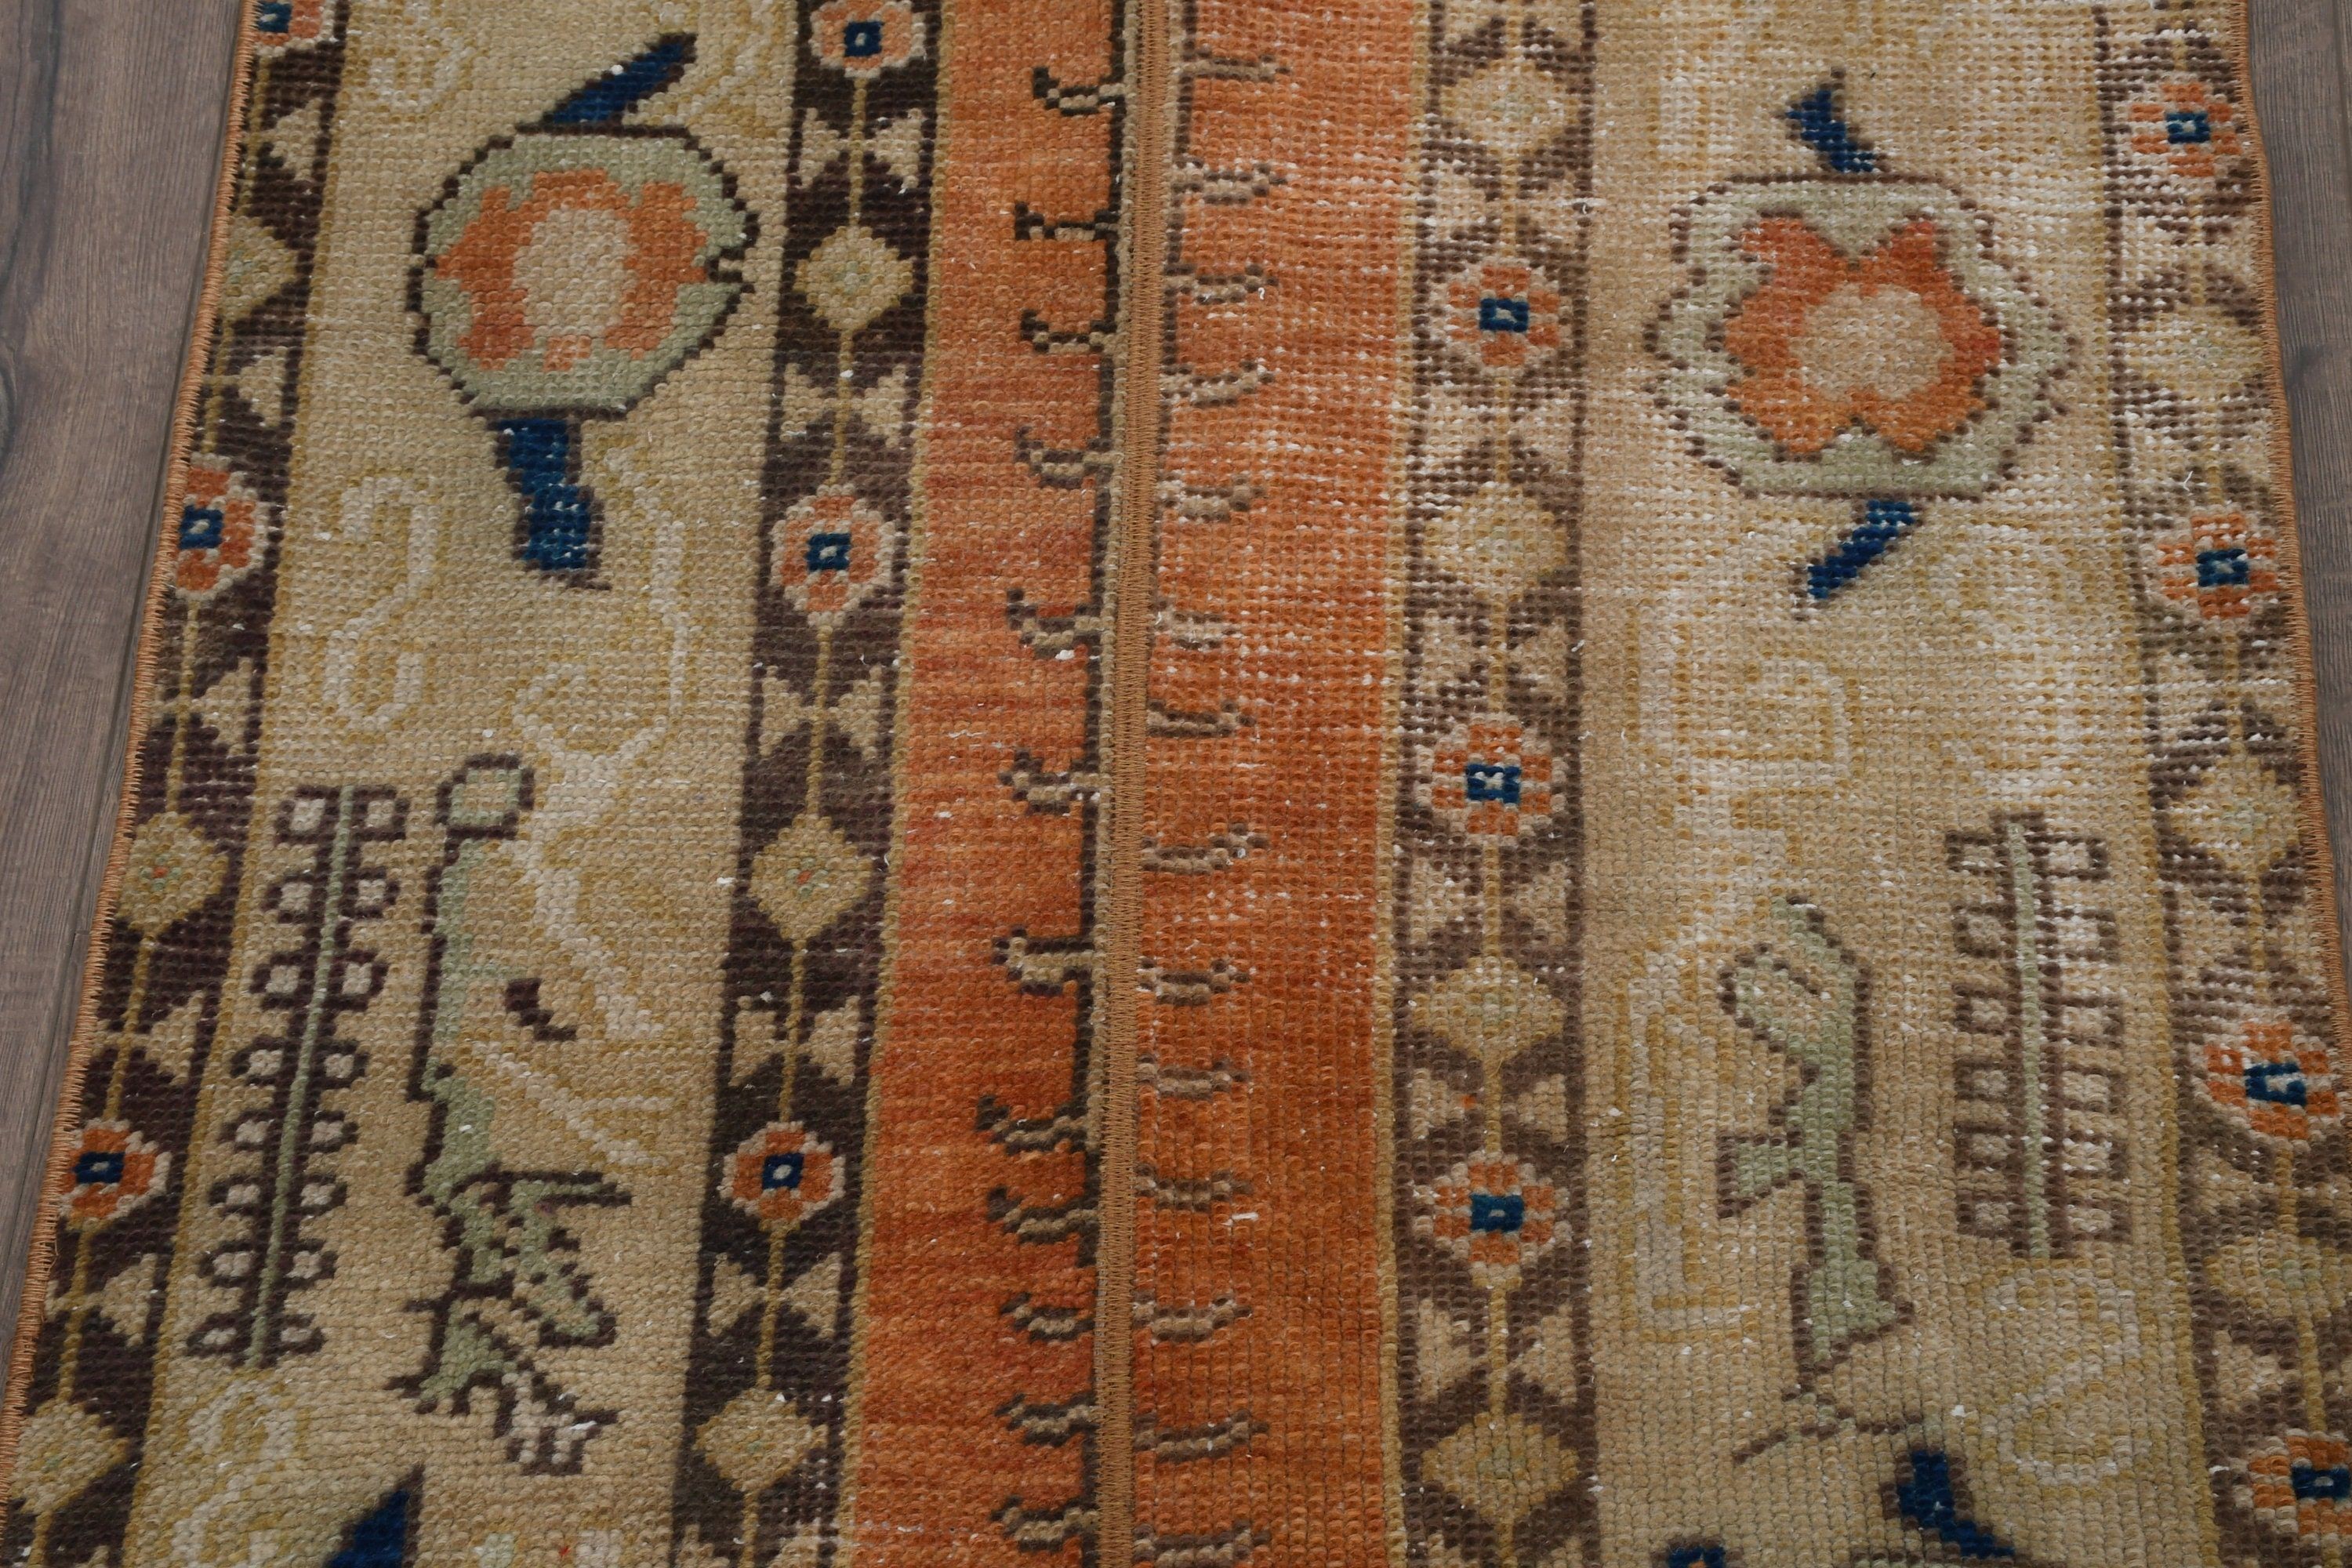 Turkish Rugs, Rugs for Runner, Anatolian Rug, Brown Floor Rugs, Kitchen Rugs, Hallway Rugs, Floor Rugs, Vintage Rug, 2.4x7.5 ft Runner Rug